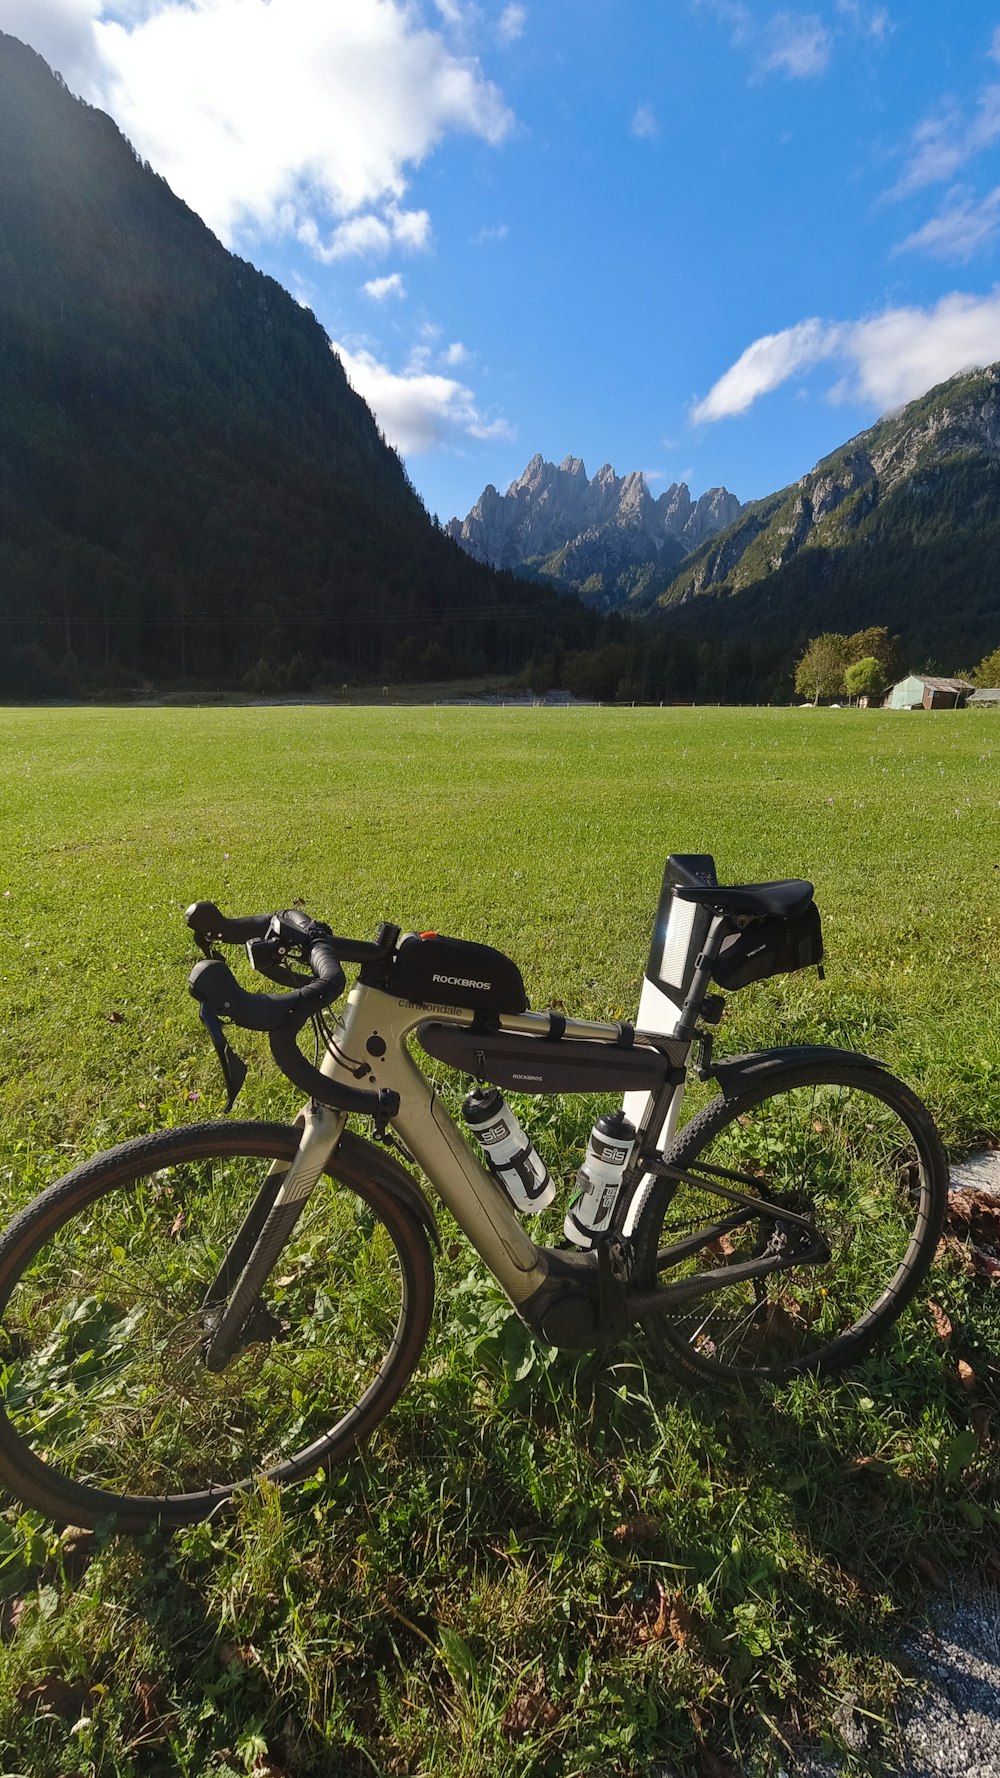 una bicicleta aparcada en la hierba frente a una montaña